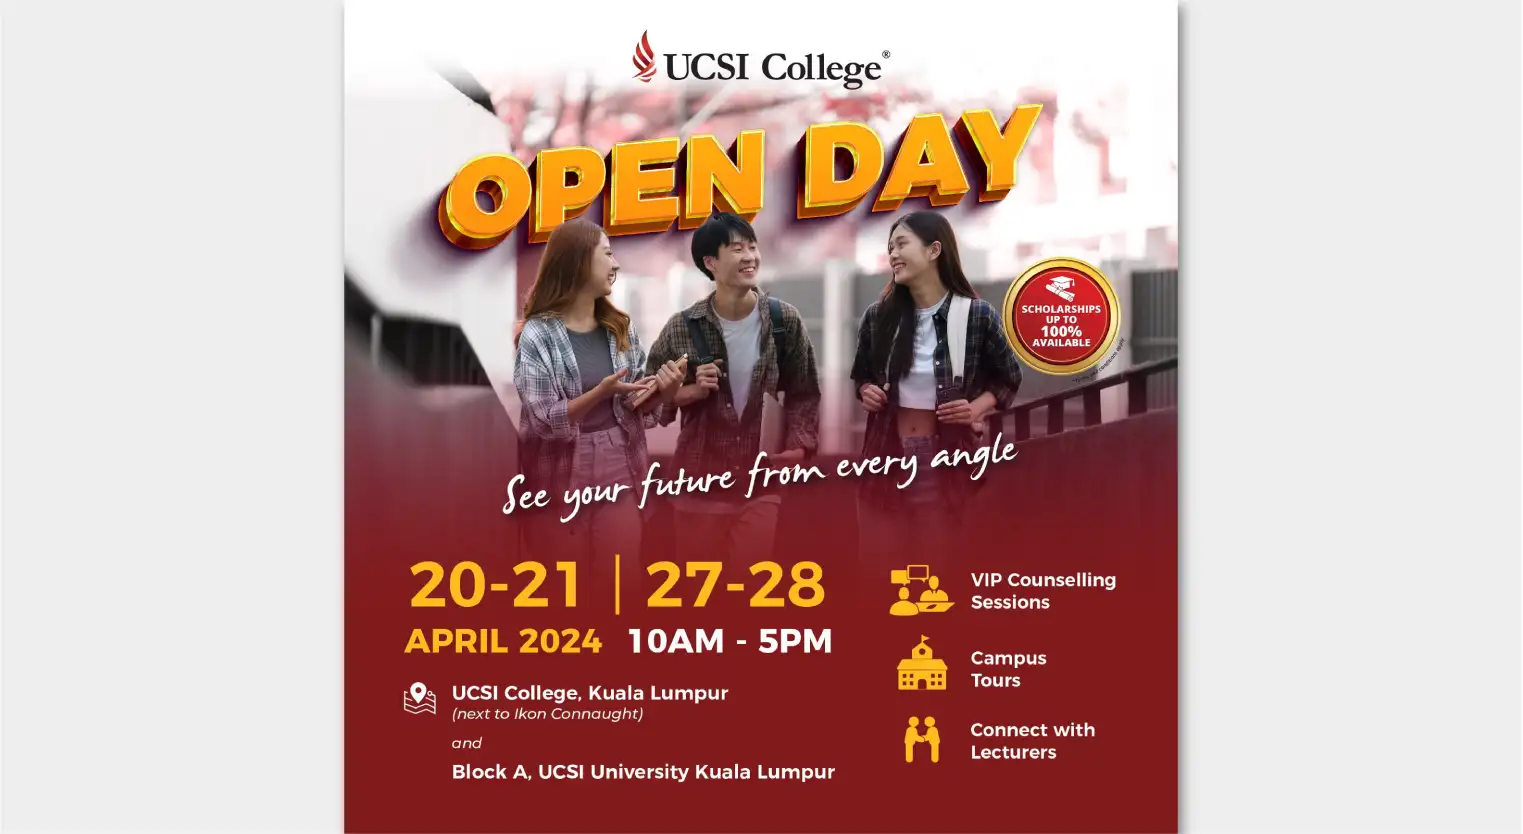 discover-future-ucsi-college-open-day-april-2024